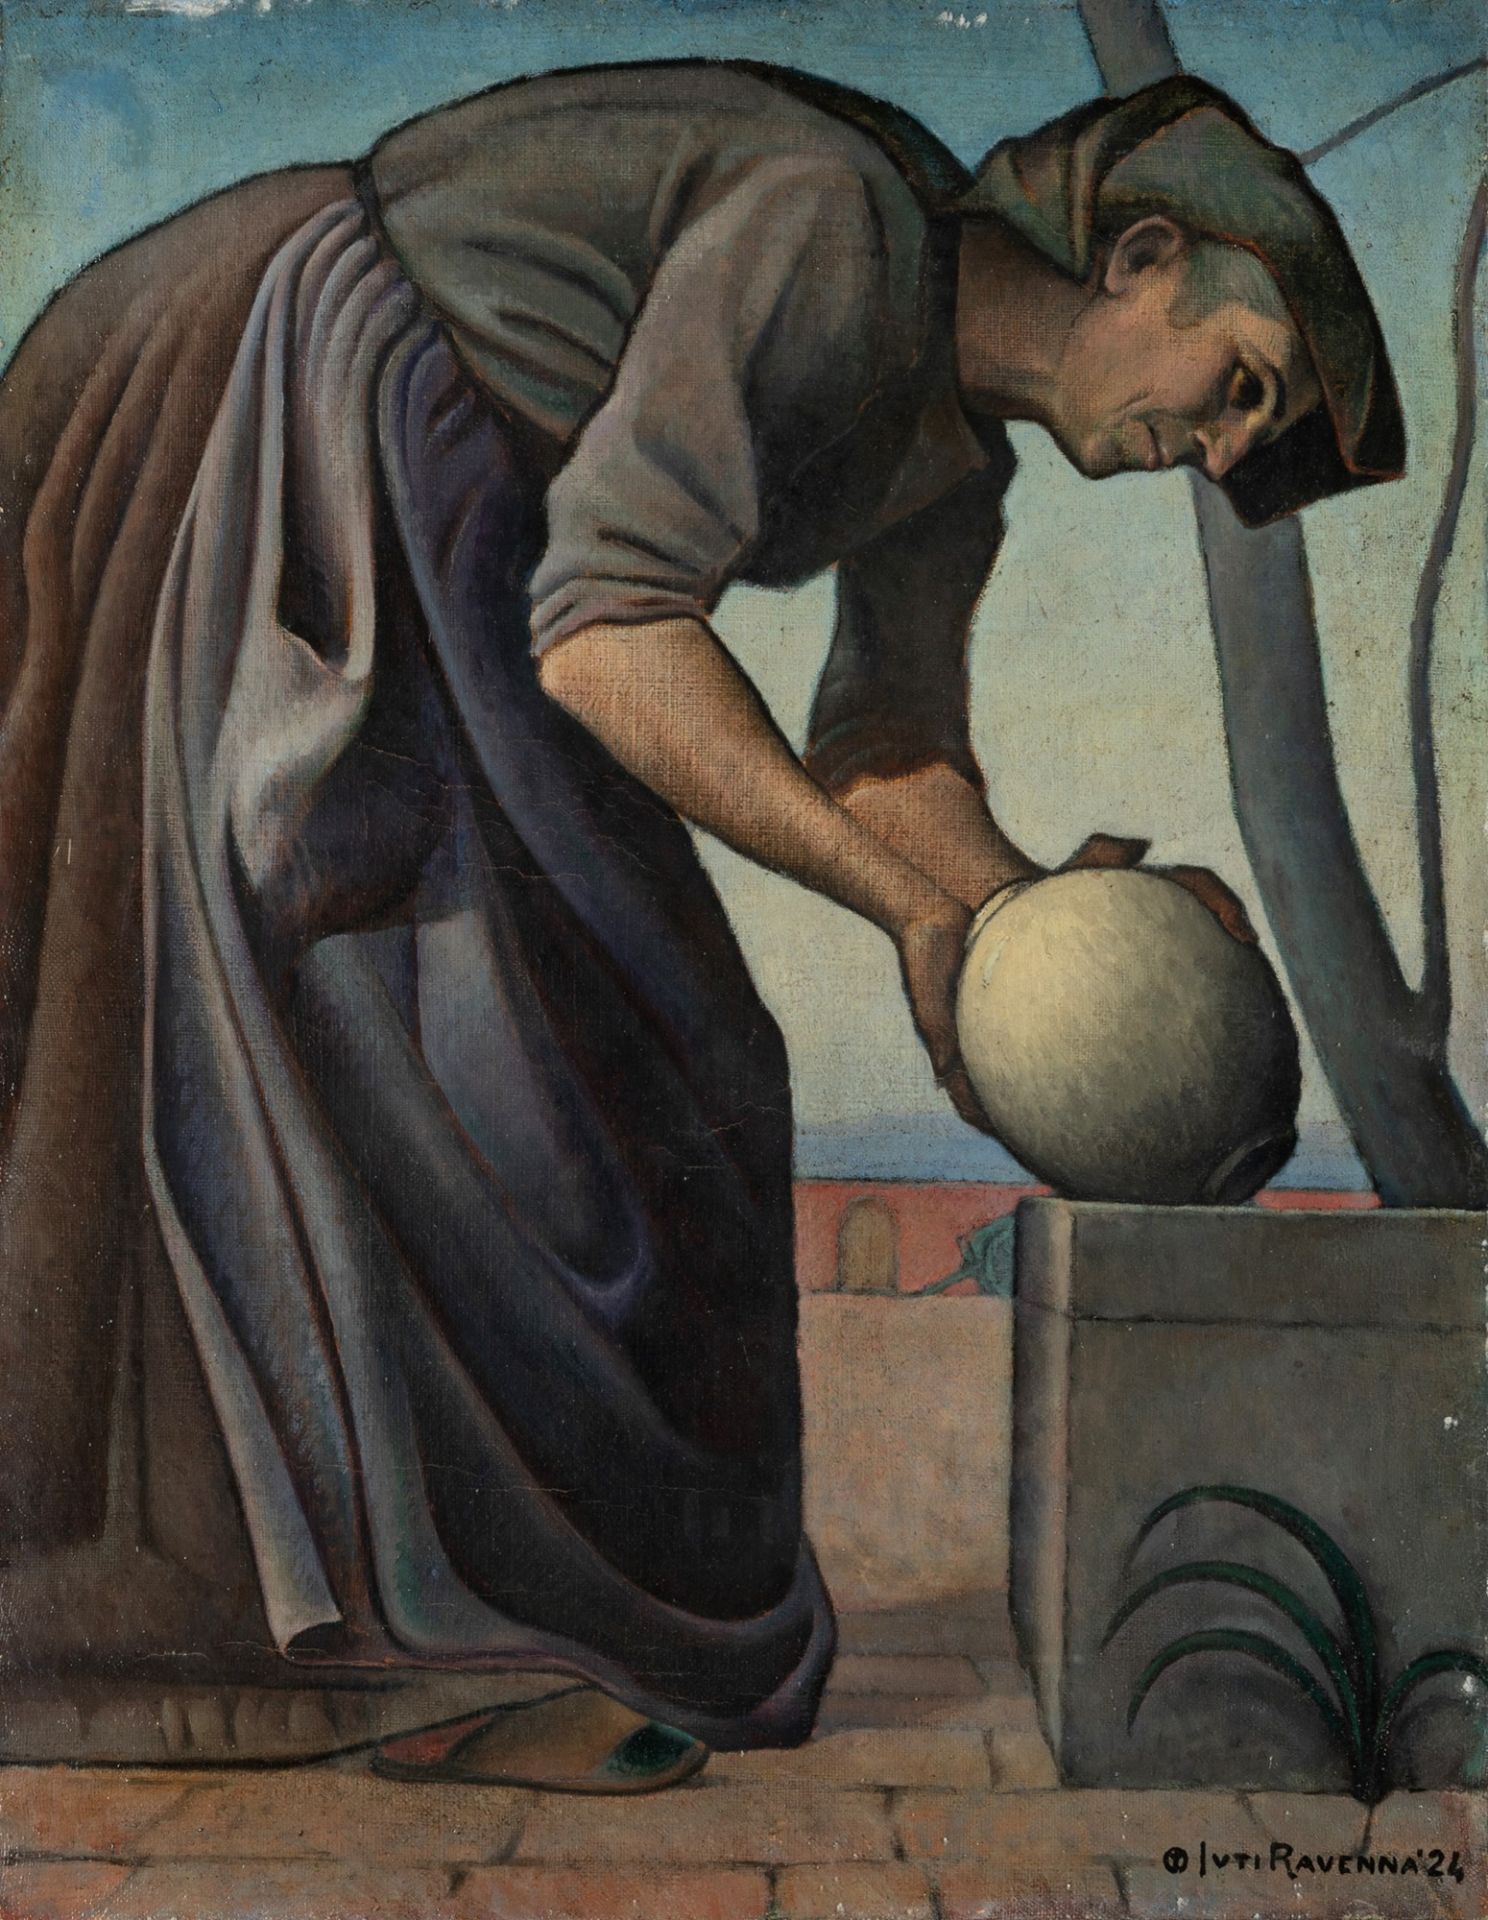 Juti Ravenna (Spadacenta (VE) 1897-Treviso 1972) - Untitled, 1924